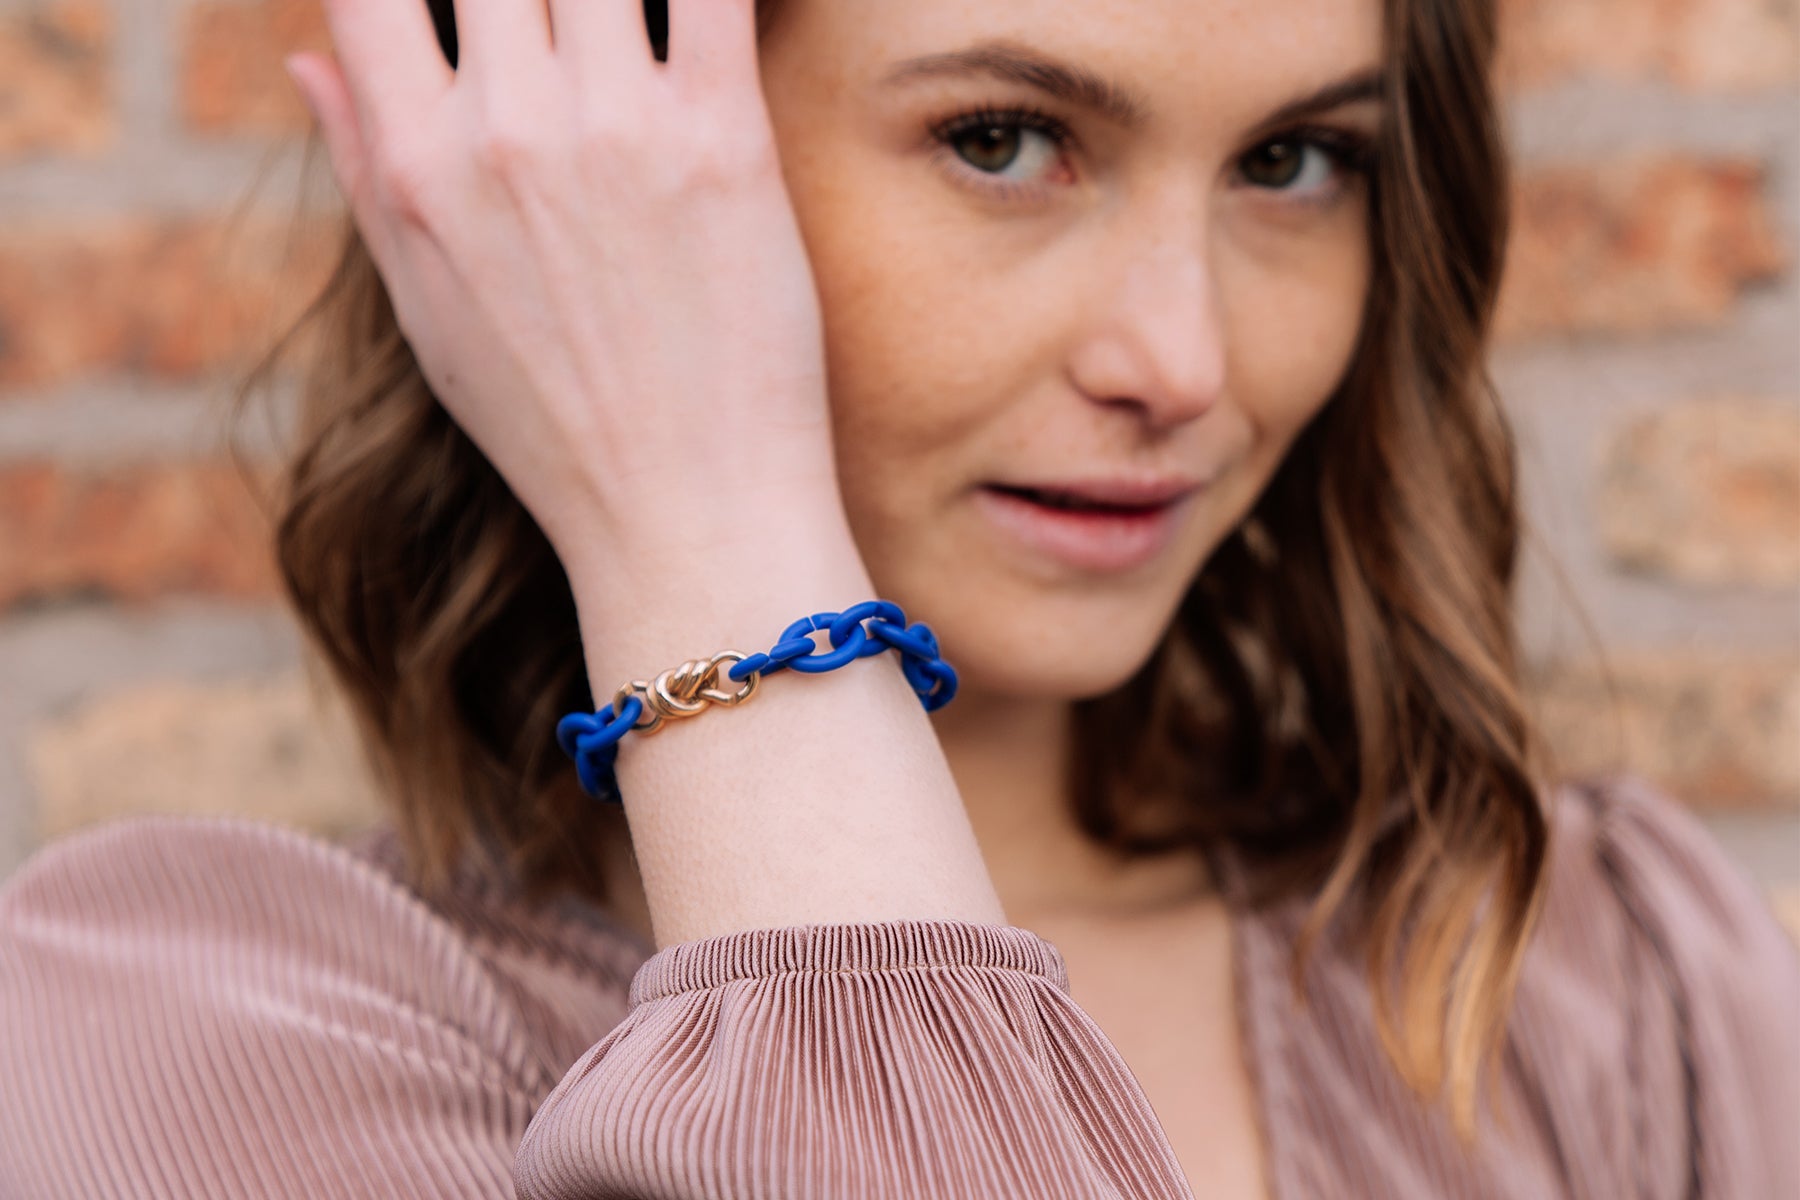 Model wearing a cobalt blue bracelet with a bronze link